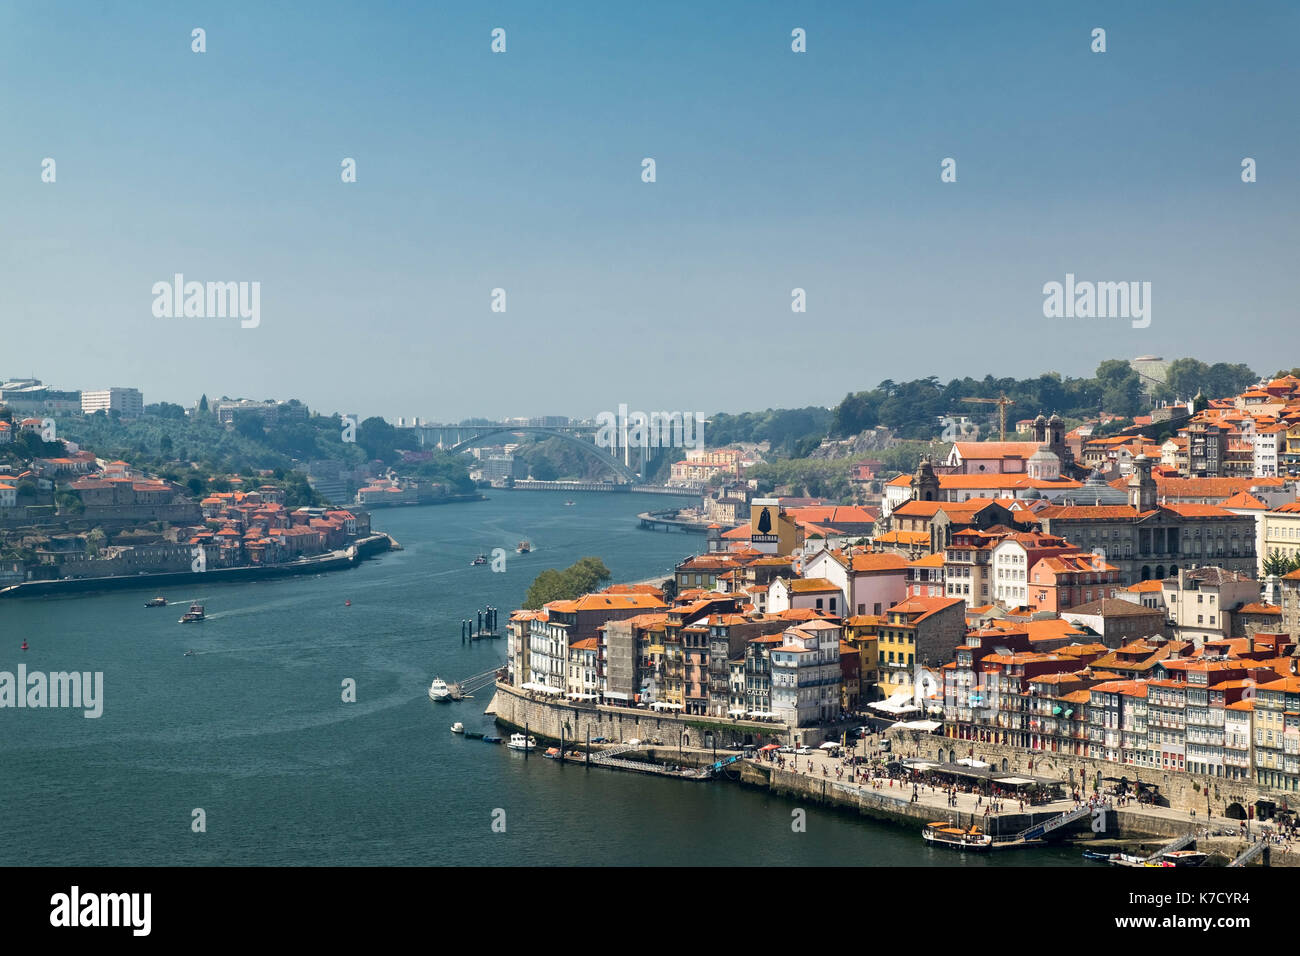 Vue sur le paysage de la ville de Porto au nord du Portugal, ce site étonnant est une classe d'architecture ouverte large des conquêtes romaines à nos jours Banque D'Images